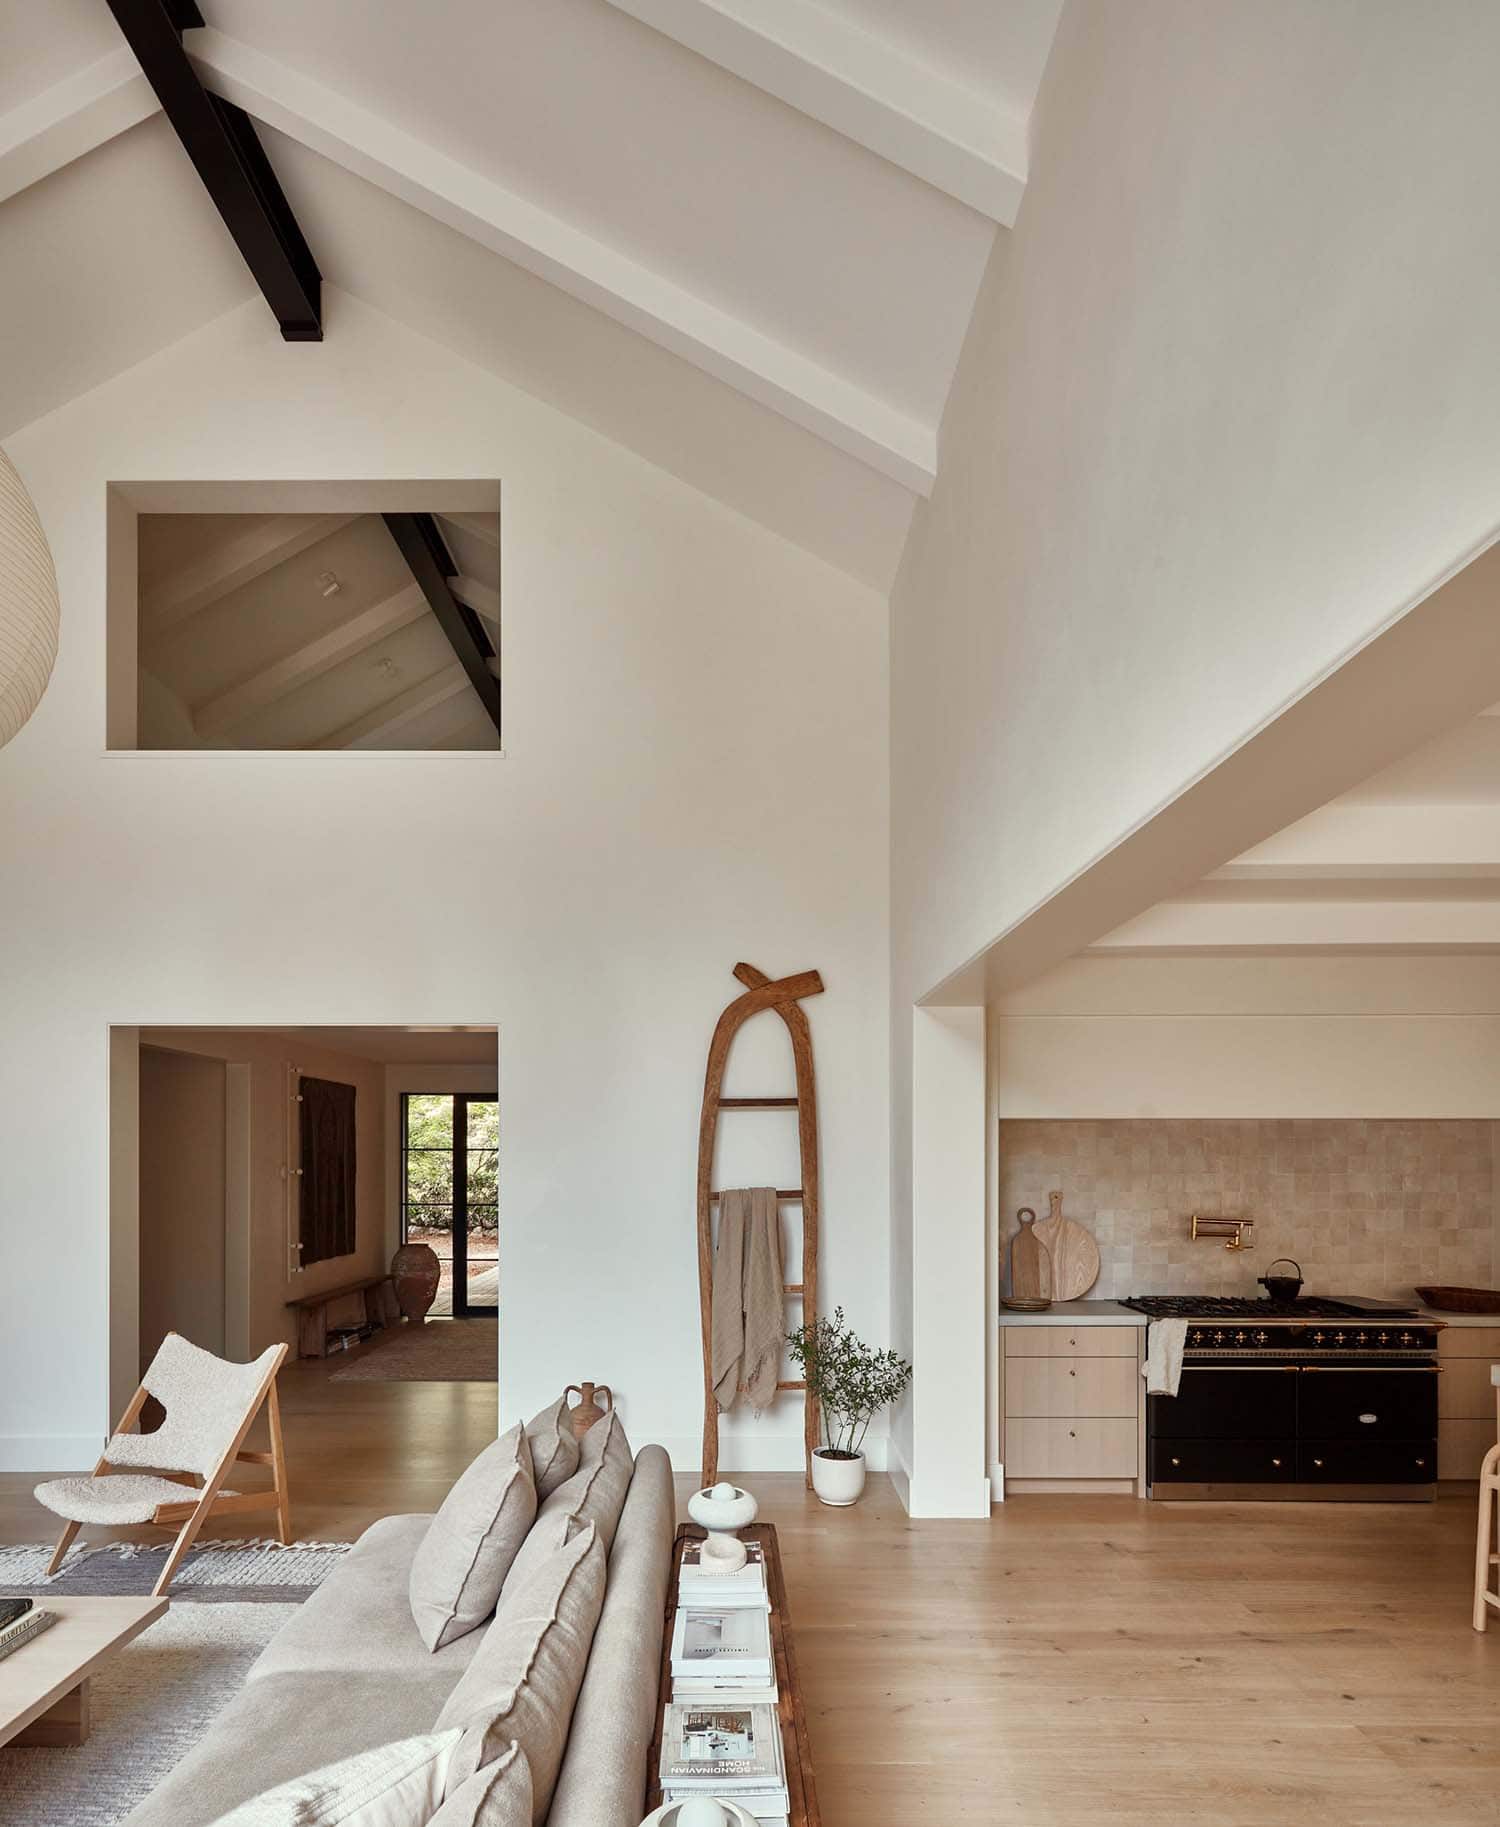 Scandinavian style living room